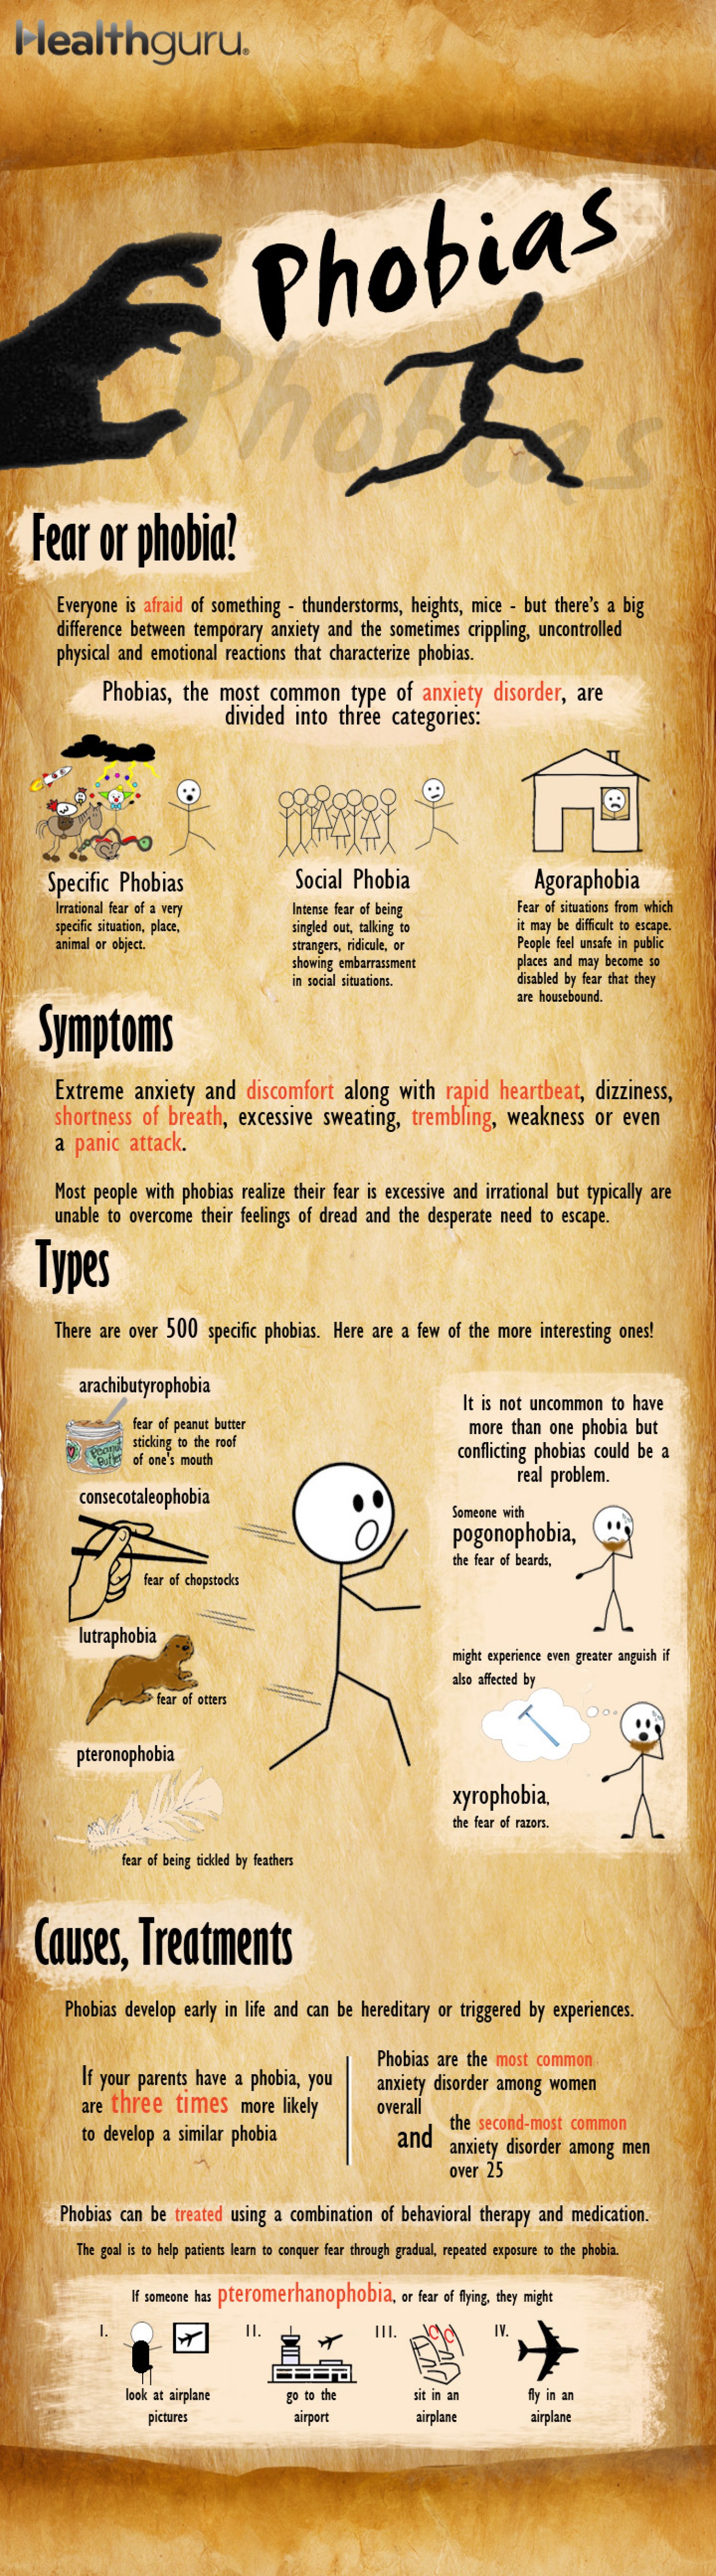 Phobias infographic